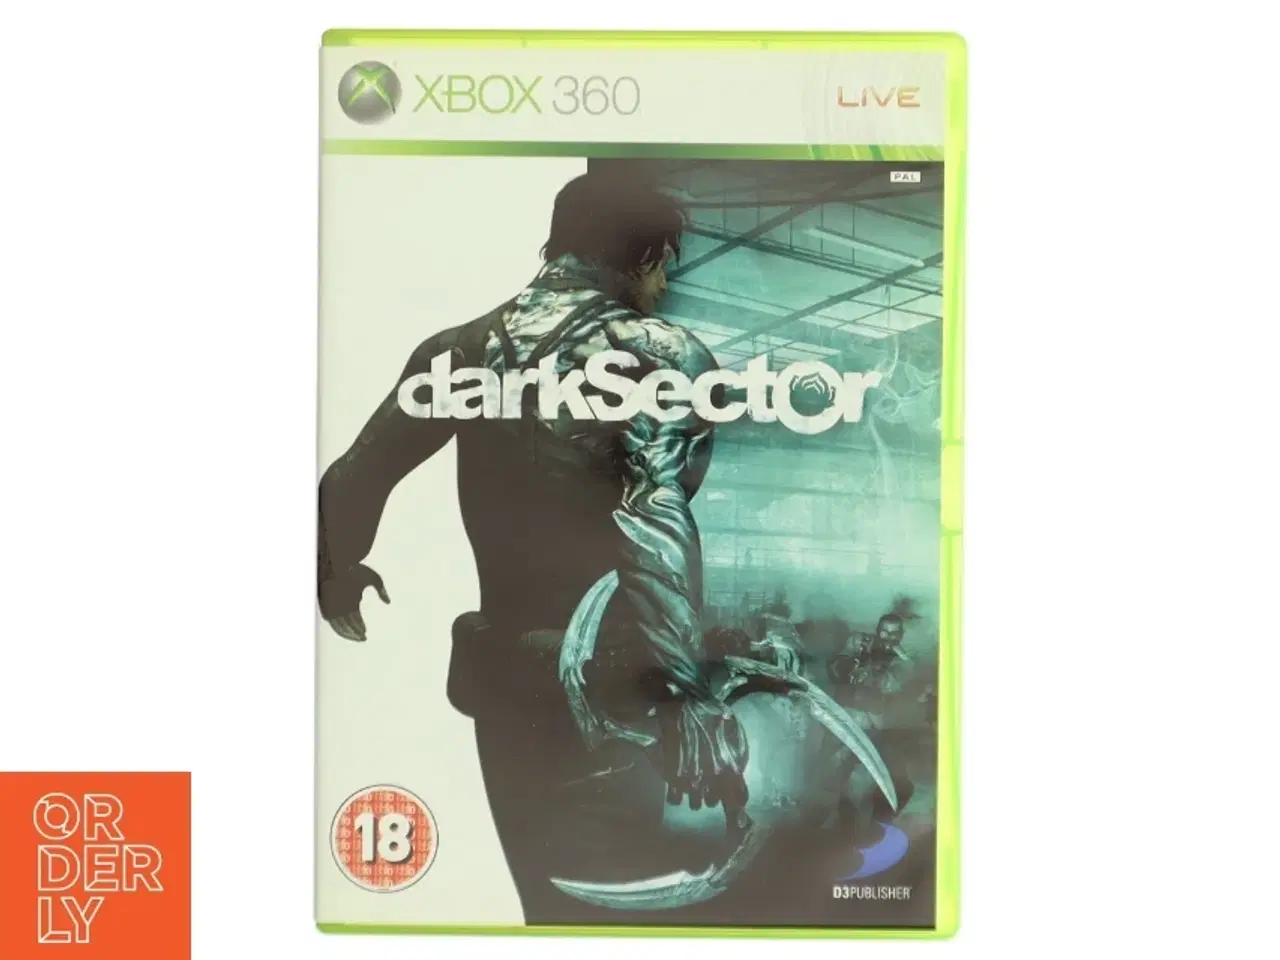 Billede 1 - Xbox 360 spil 'Dark Sector' fra Microsoft